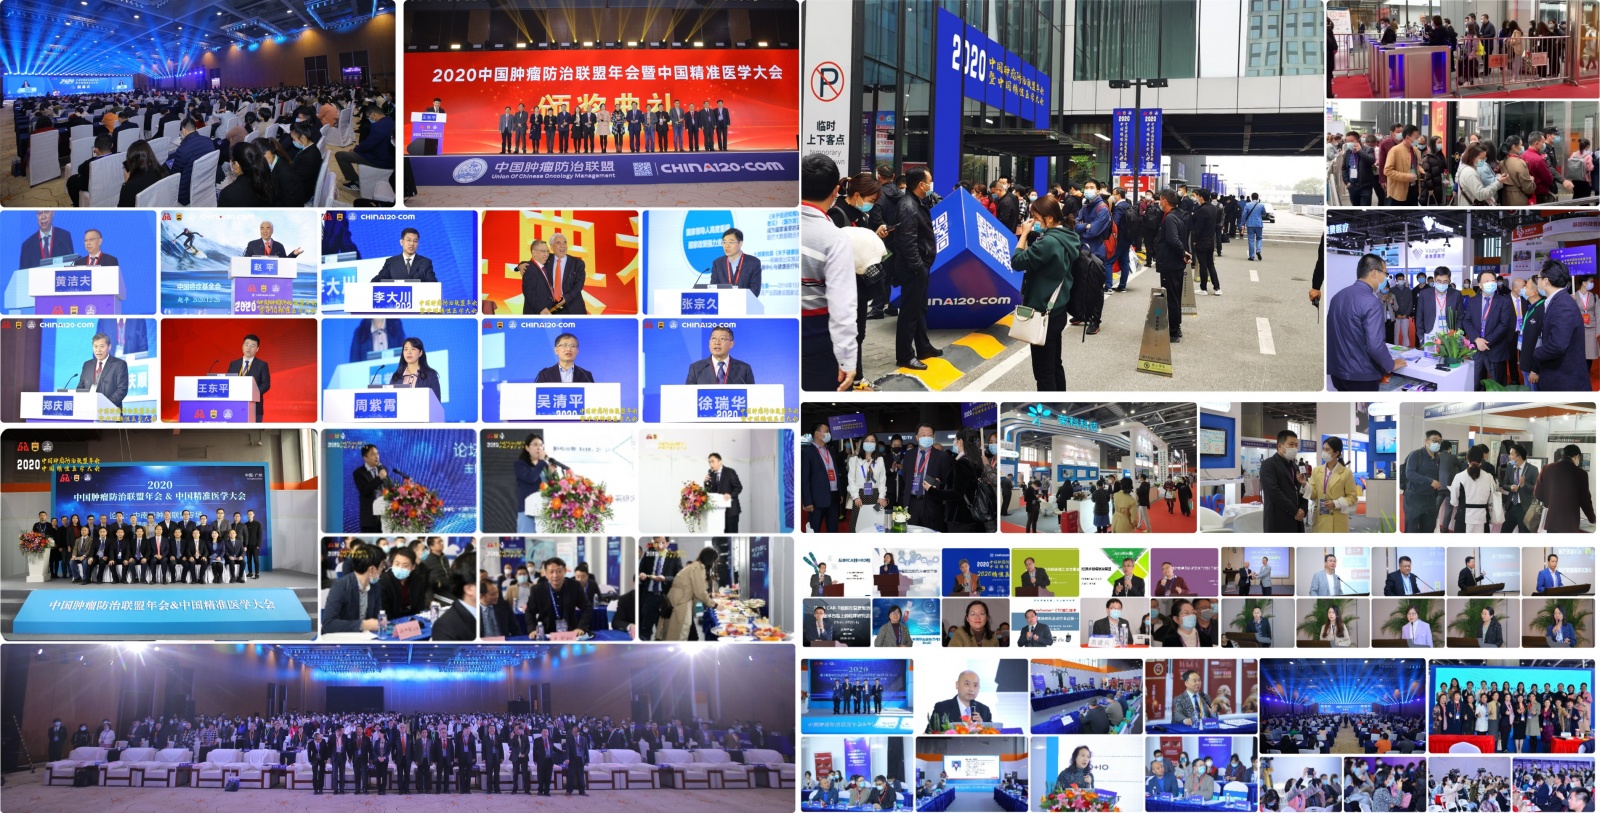 2023中国精准医疗产业博览会暨2023中国肿瘤防治年会